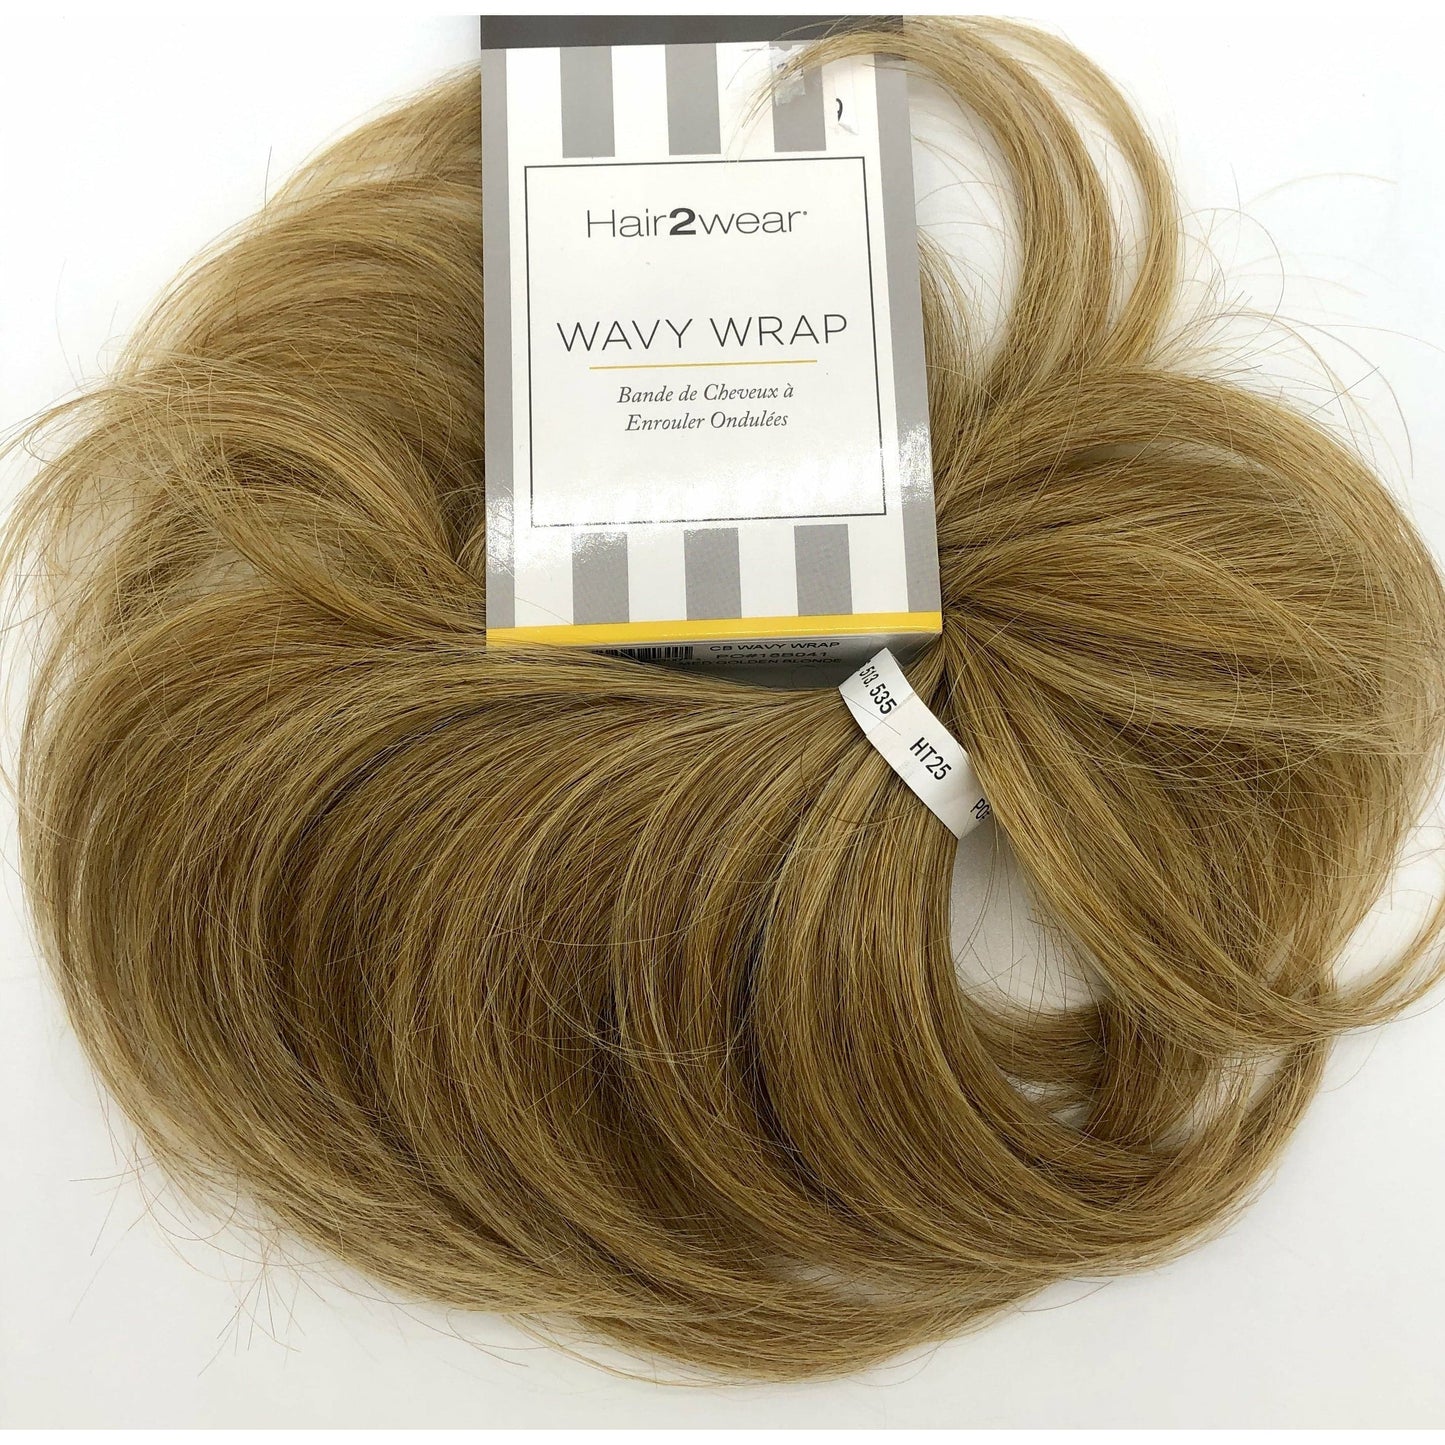 Wavy Wrap by Hairuwear - VIP Extensions